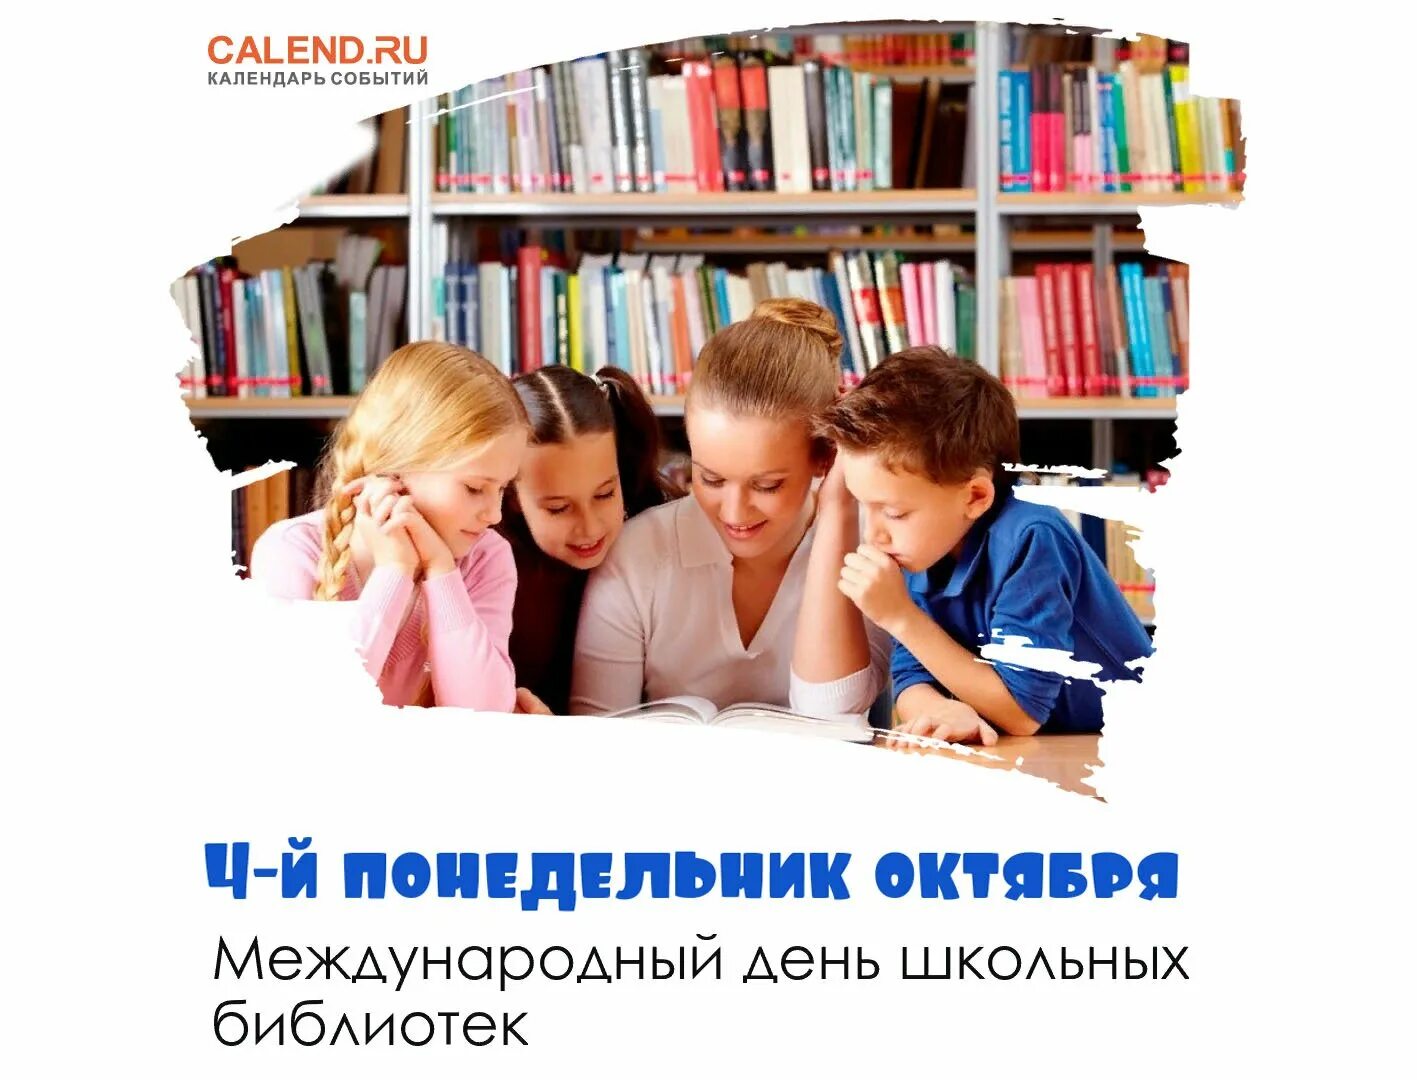 Международный день детских библиотек. Международный день школьных библиотек. День школьных библиотек 2022. Поздравление библиотеке. Международный день школьных библиотек 2022.